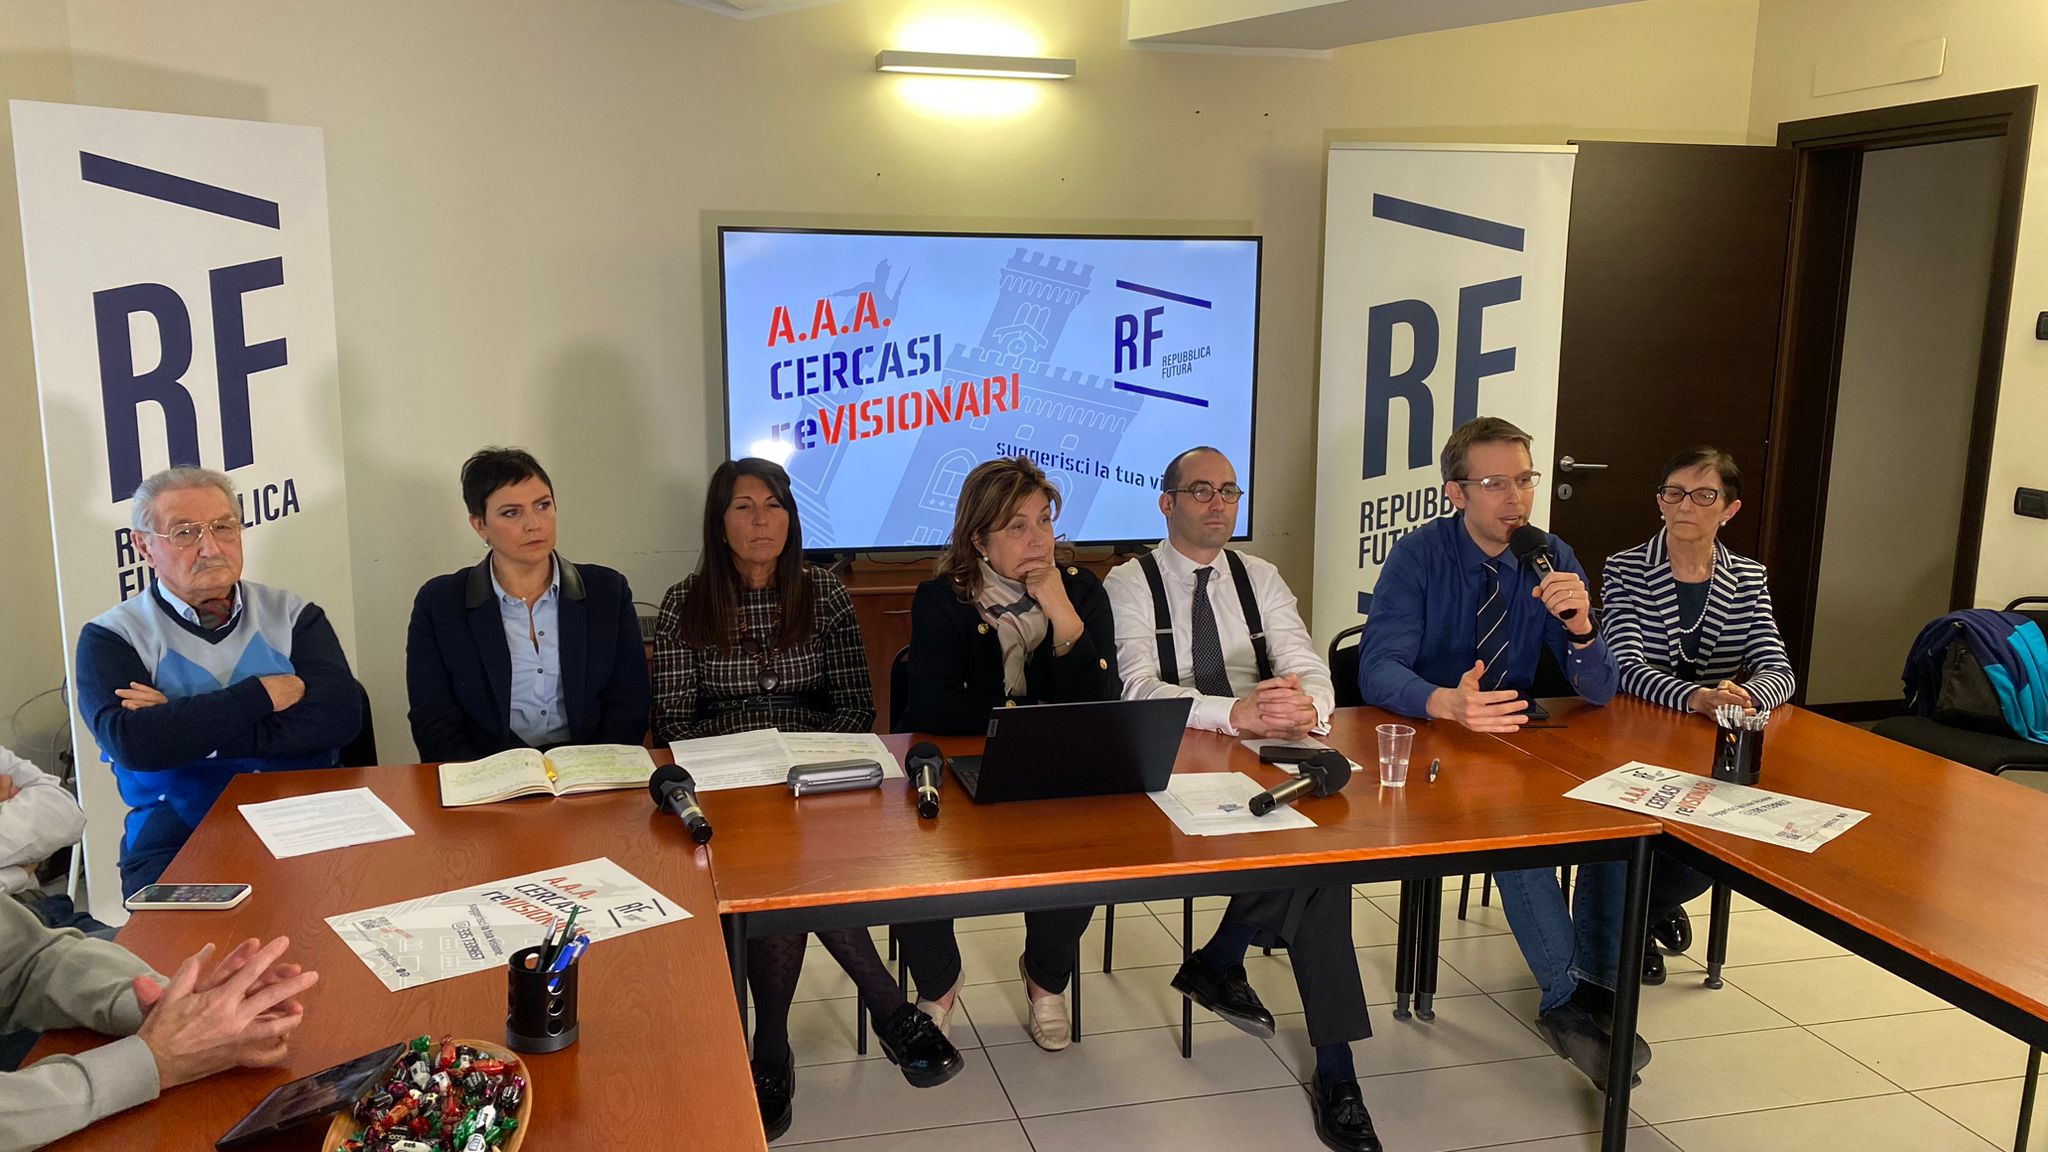 Informazione sotto attacco, Repubblica Futura: “A San Marino emergenza democratica”